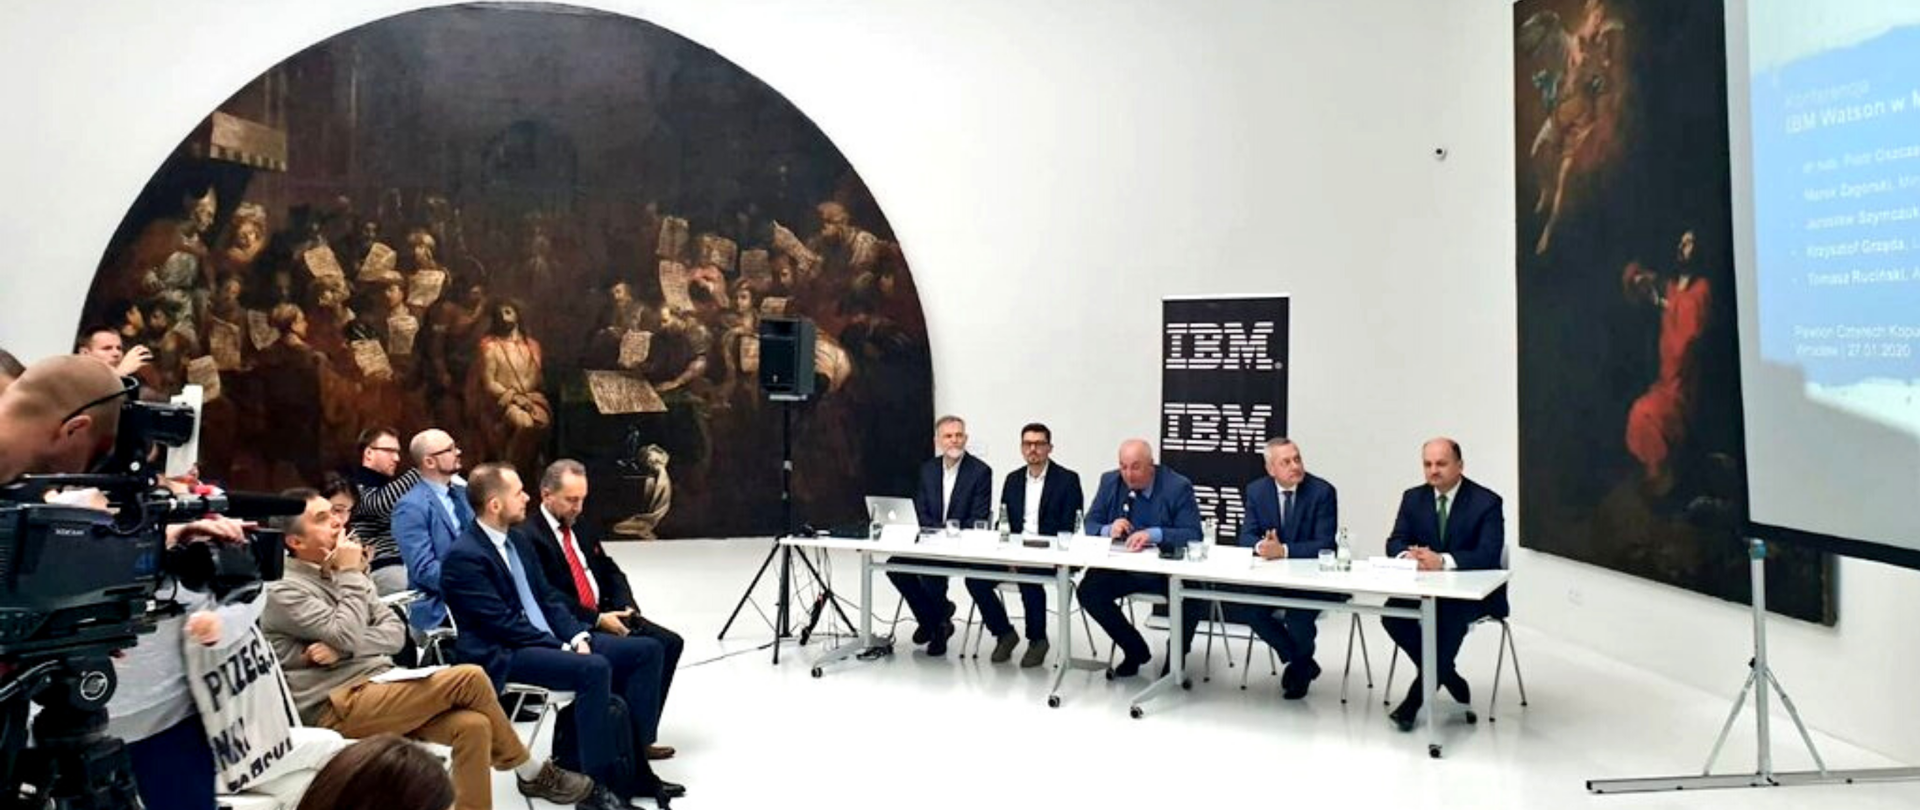 Minister Marek Zagórski siedzi przy stole, obok niego czterech mężczyzn. Naprzeciw dziennikarze. Sala muzealna